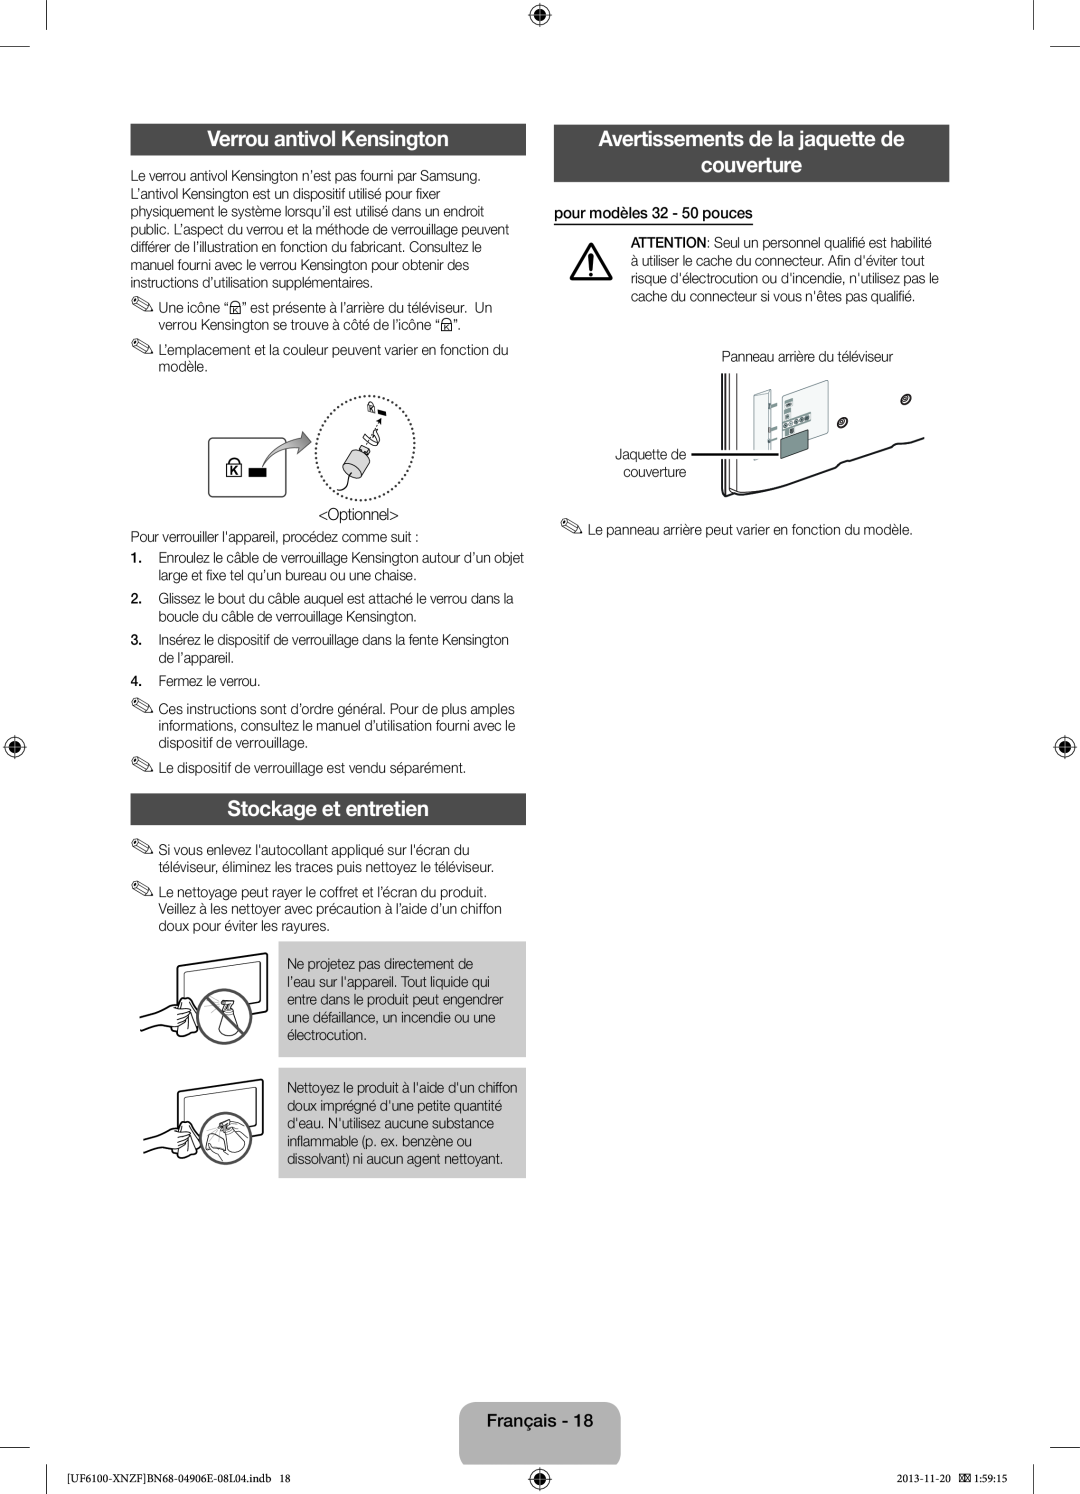 Samsung UE32F6100AWXXH manual Verrou antivol Kensington, Avertissements de la jaquette de couverture, Stockage et entretien 